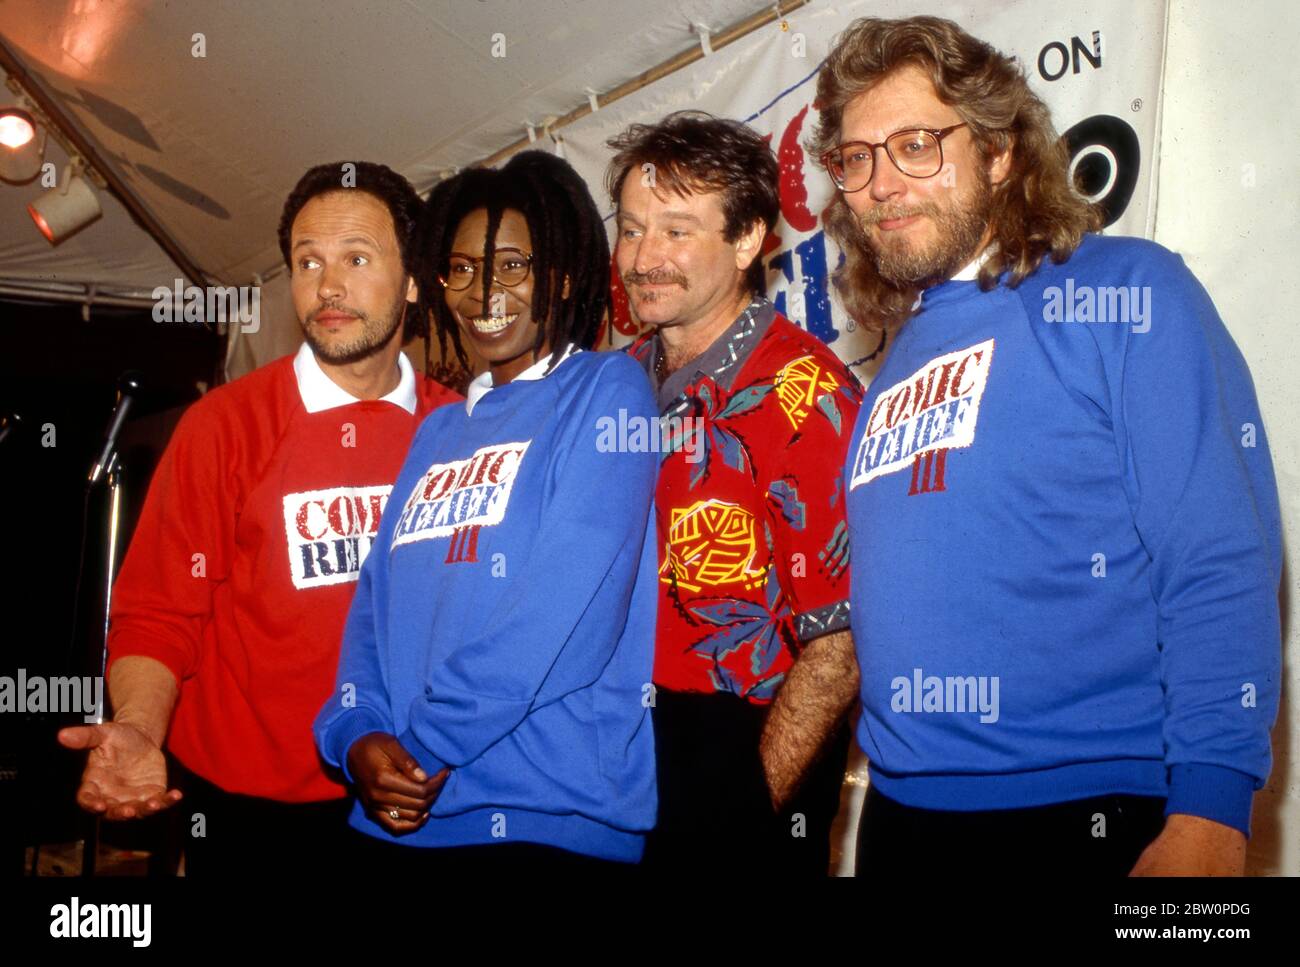 Conferenza stampa per il Comic Relief con (da sinistra a destra) Billy Crystal, Whoopi Goldberg, Robin Williams e il produttore Bob Zmuda. Foto Stock